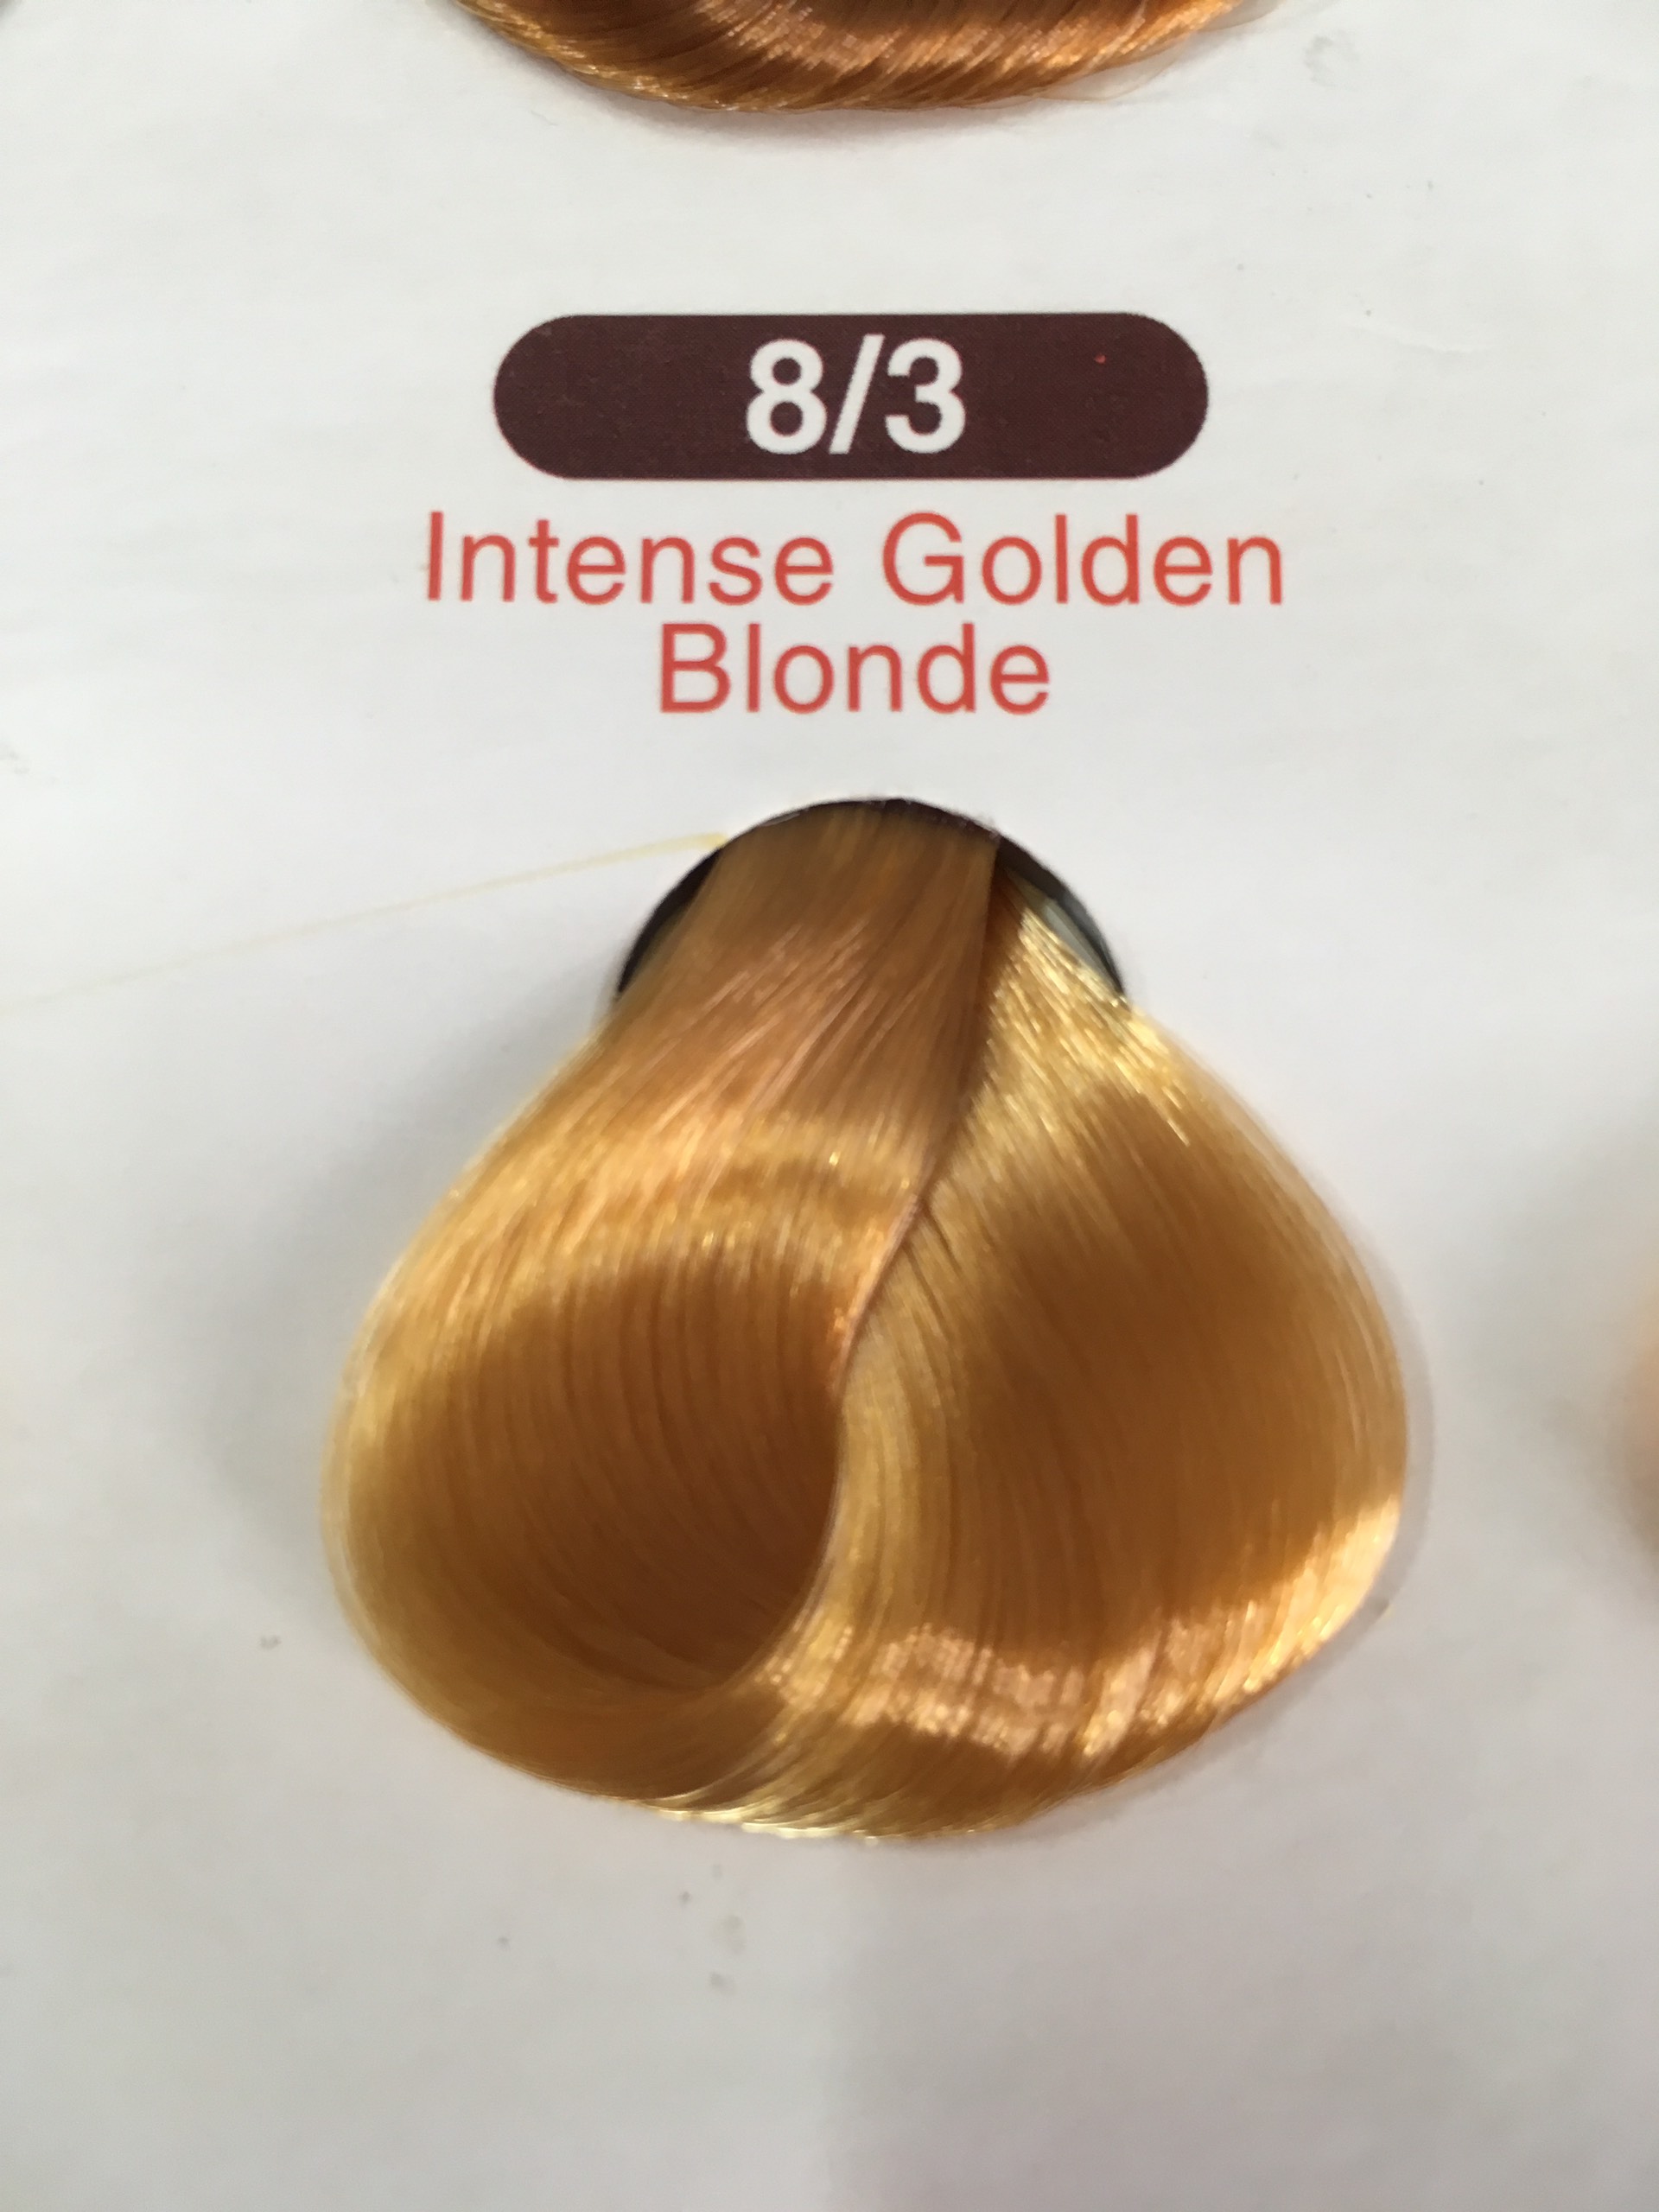 Nhuộm tóc lavox siêu dưỡng màu vàng sáng 83 tặng kèm oxy trợ nhuộm và bao  tay  Shopee Việt Nam